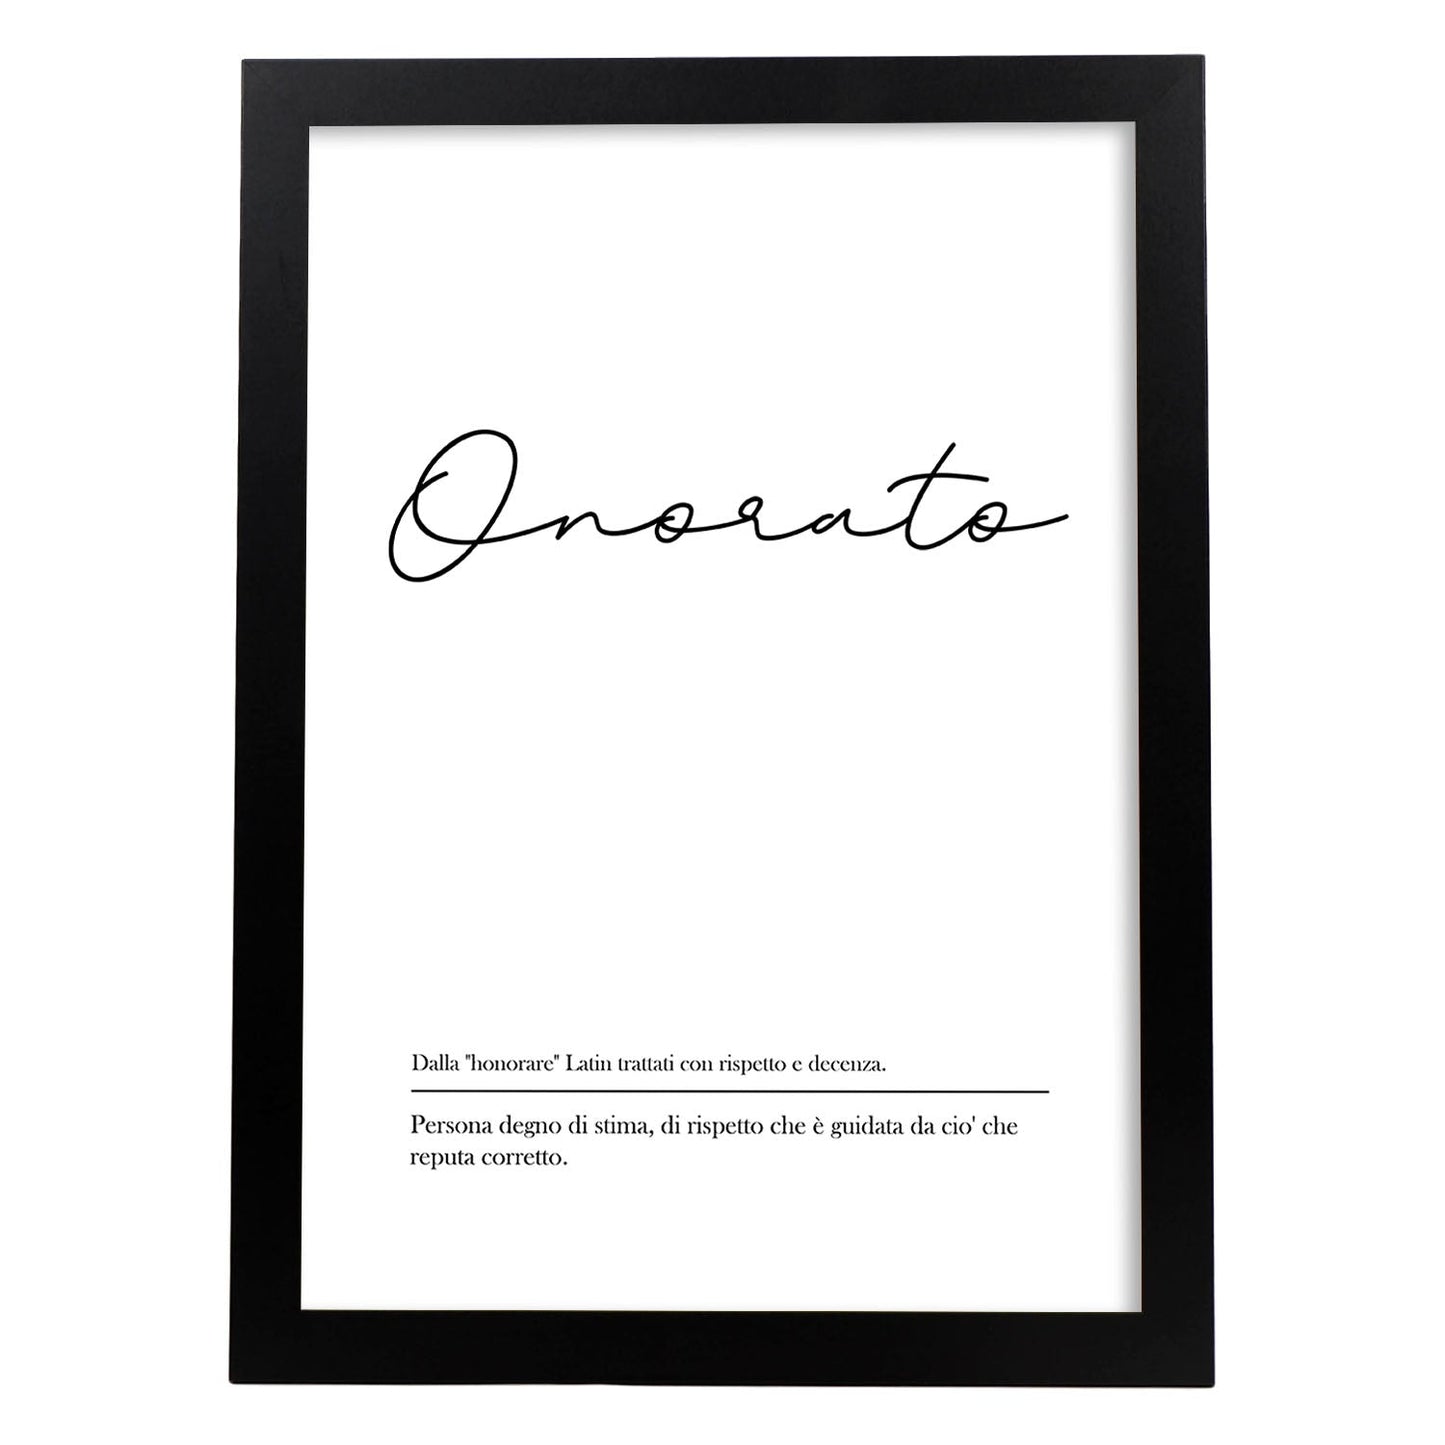 Lámina con definicion de palabras en italiano. Poster 'Onorato' de palabras con definiciones.-Artwork-Nacnic-A4-Marco Negro-Nacnic Estudio SL